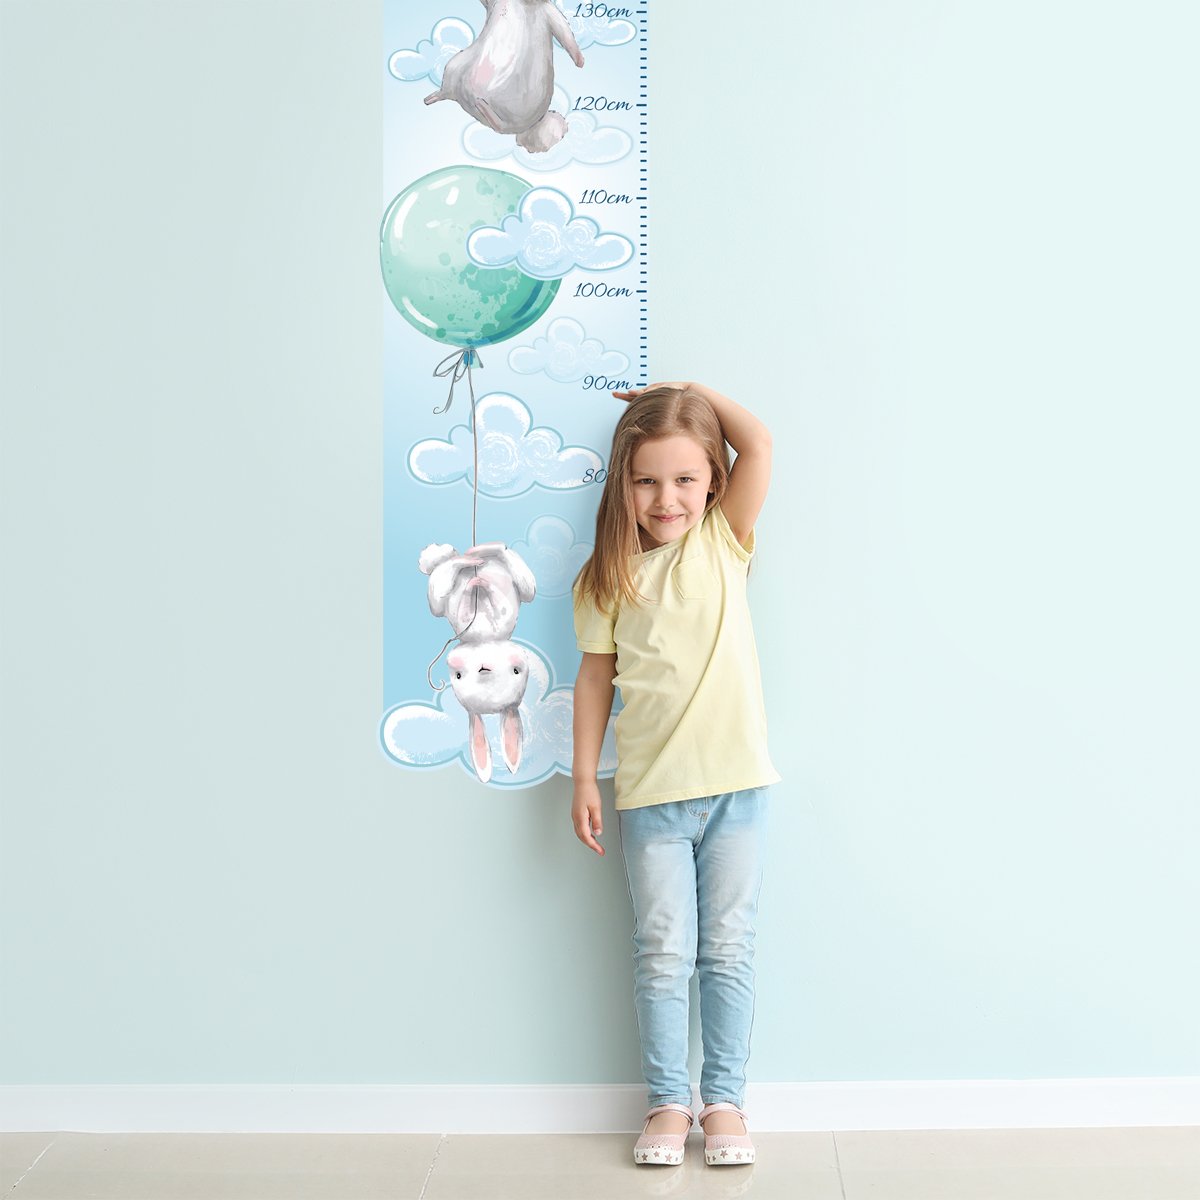 Naklejka na ścianę miarka wzrostu - króliki i miętowe baloniki#kolor_mietowy